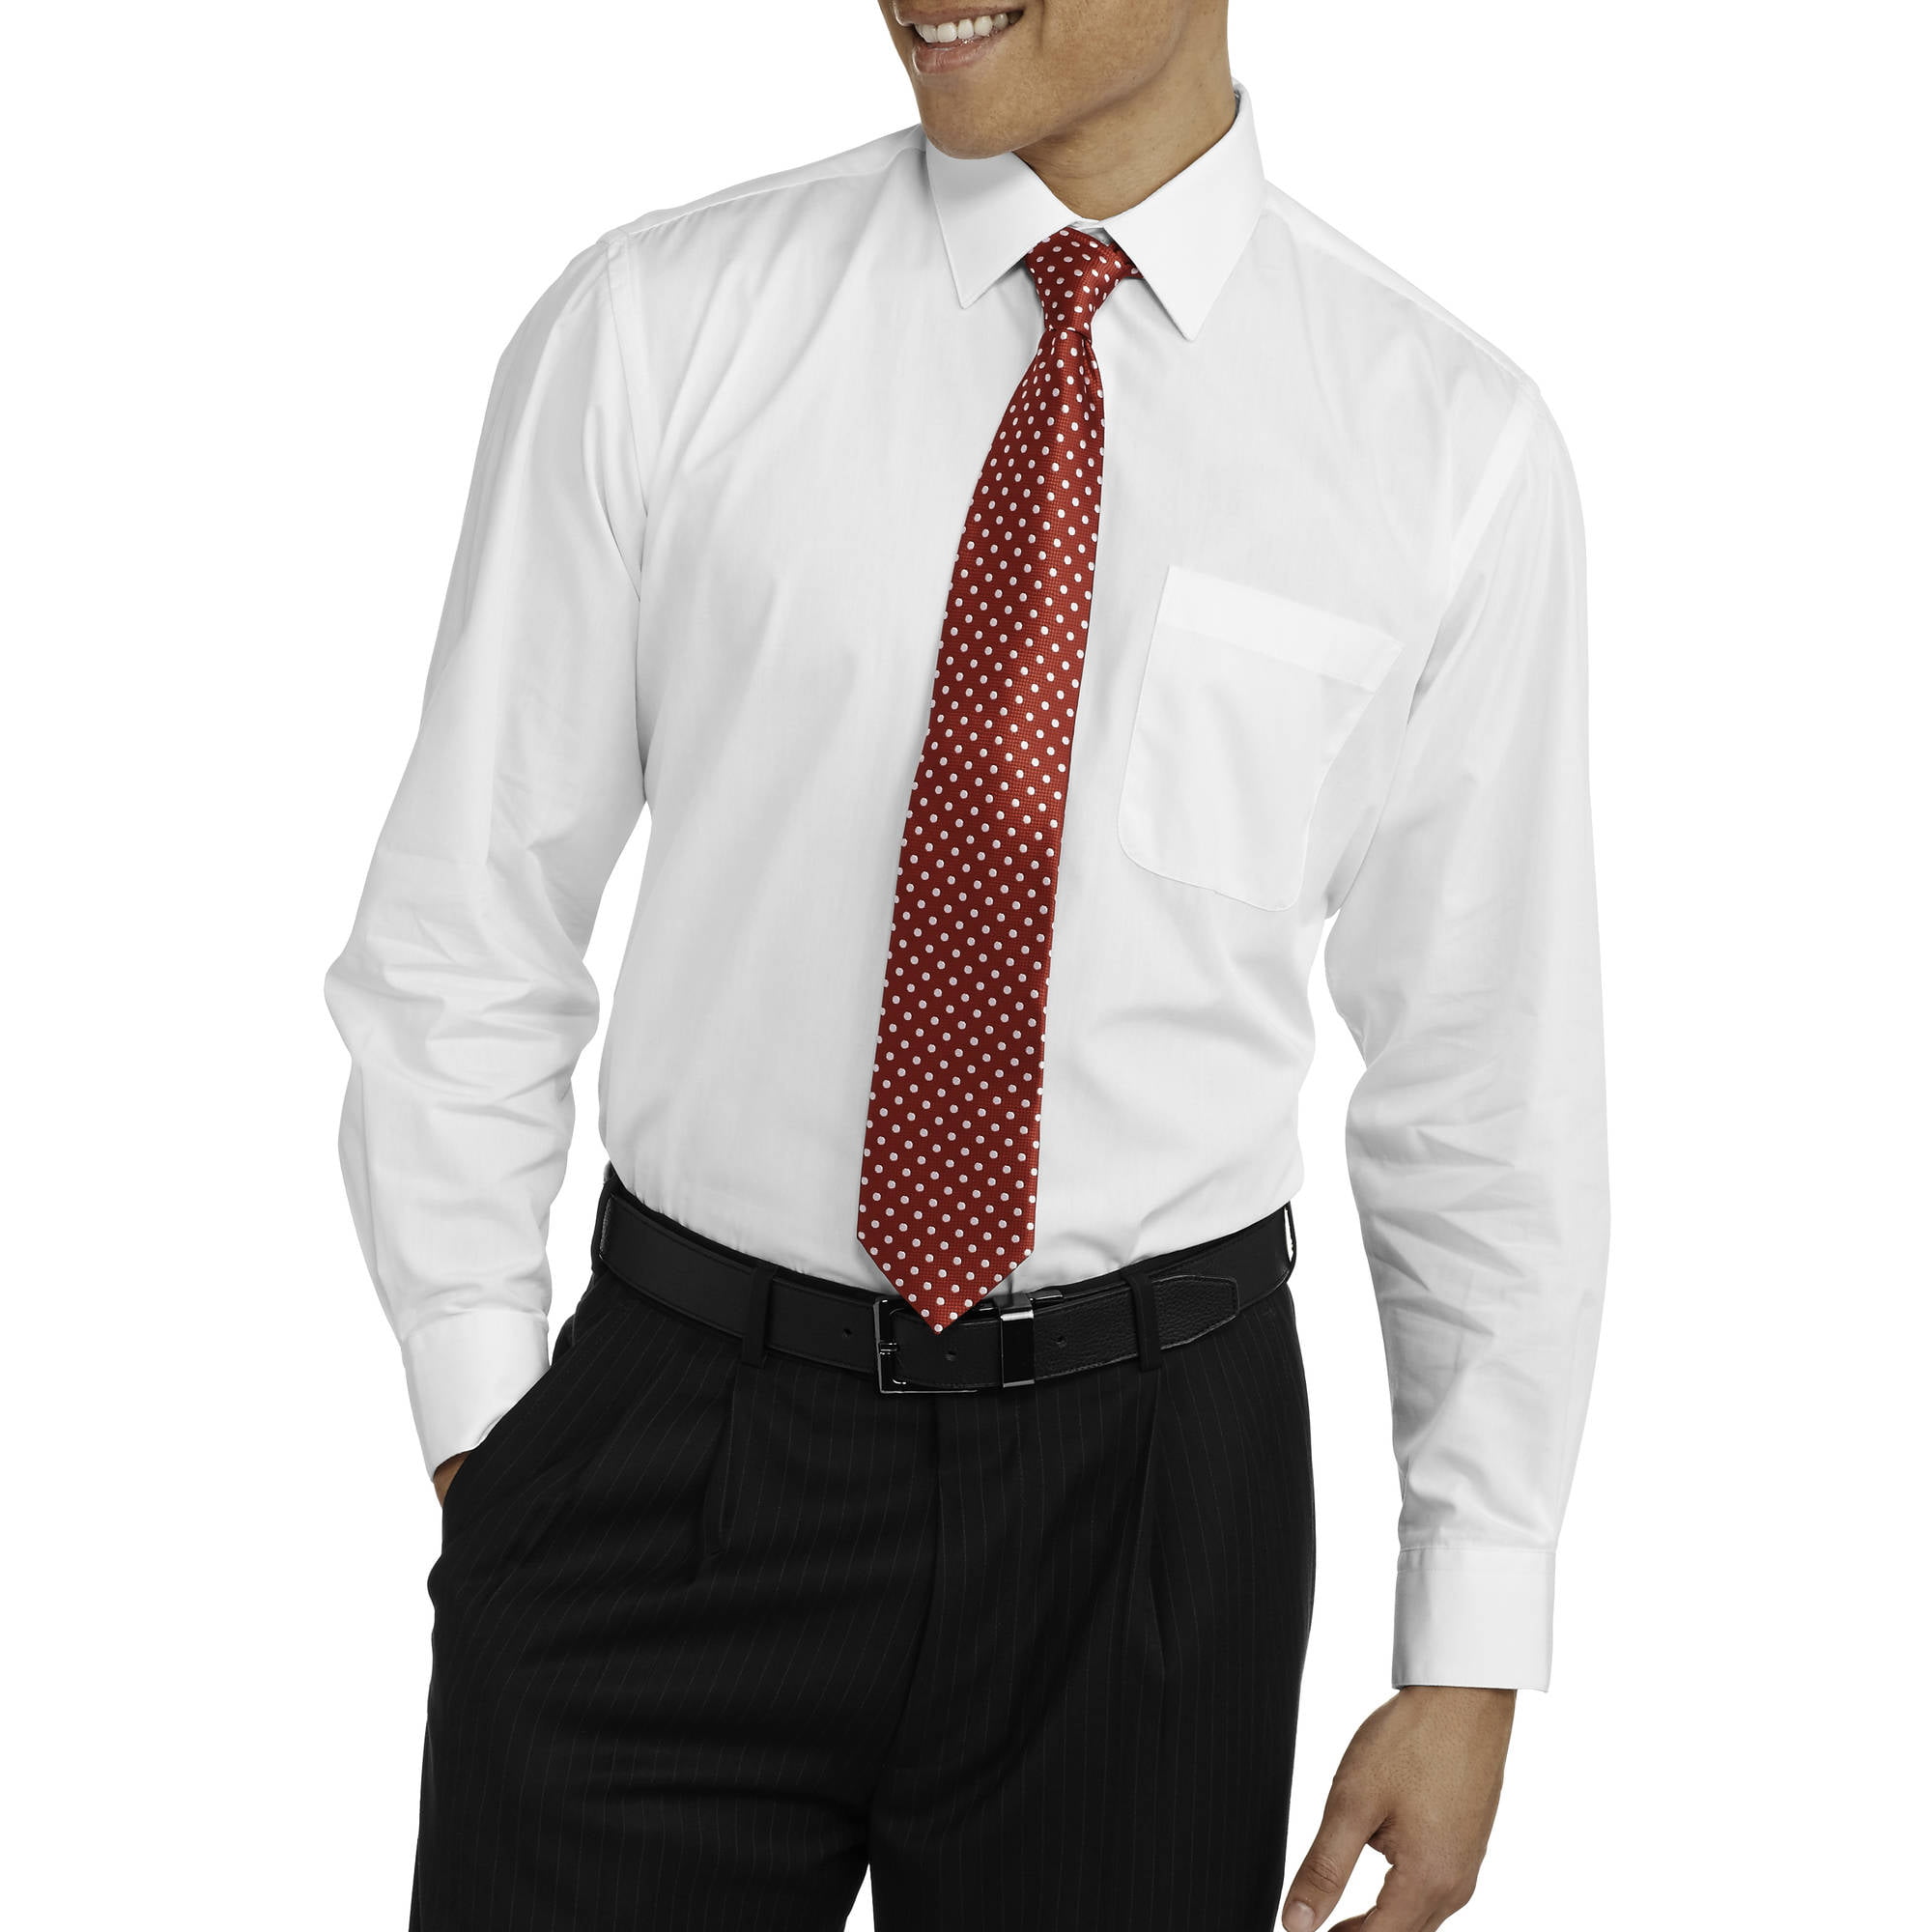 Men's Packaged Long Sleeve Dress Shirt and 2 Ties Set - Walmart.com